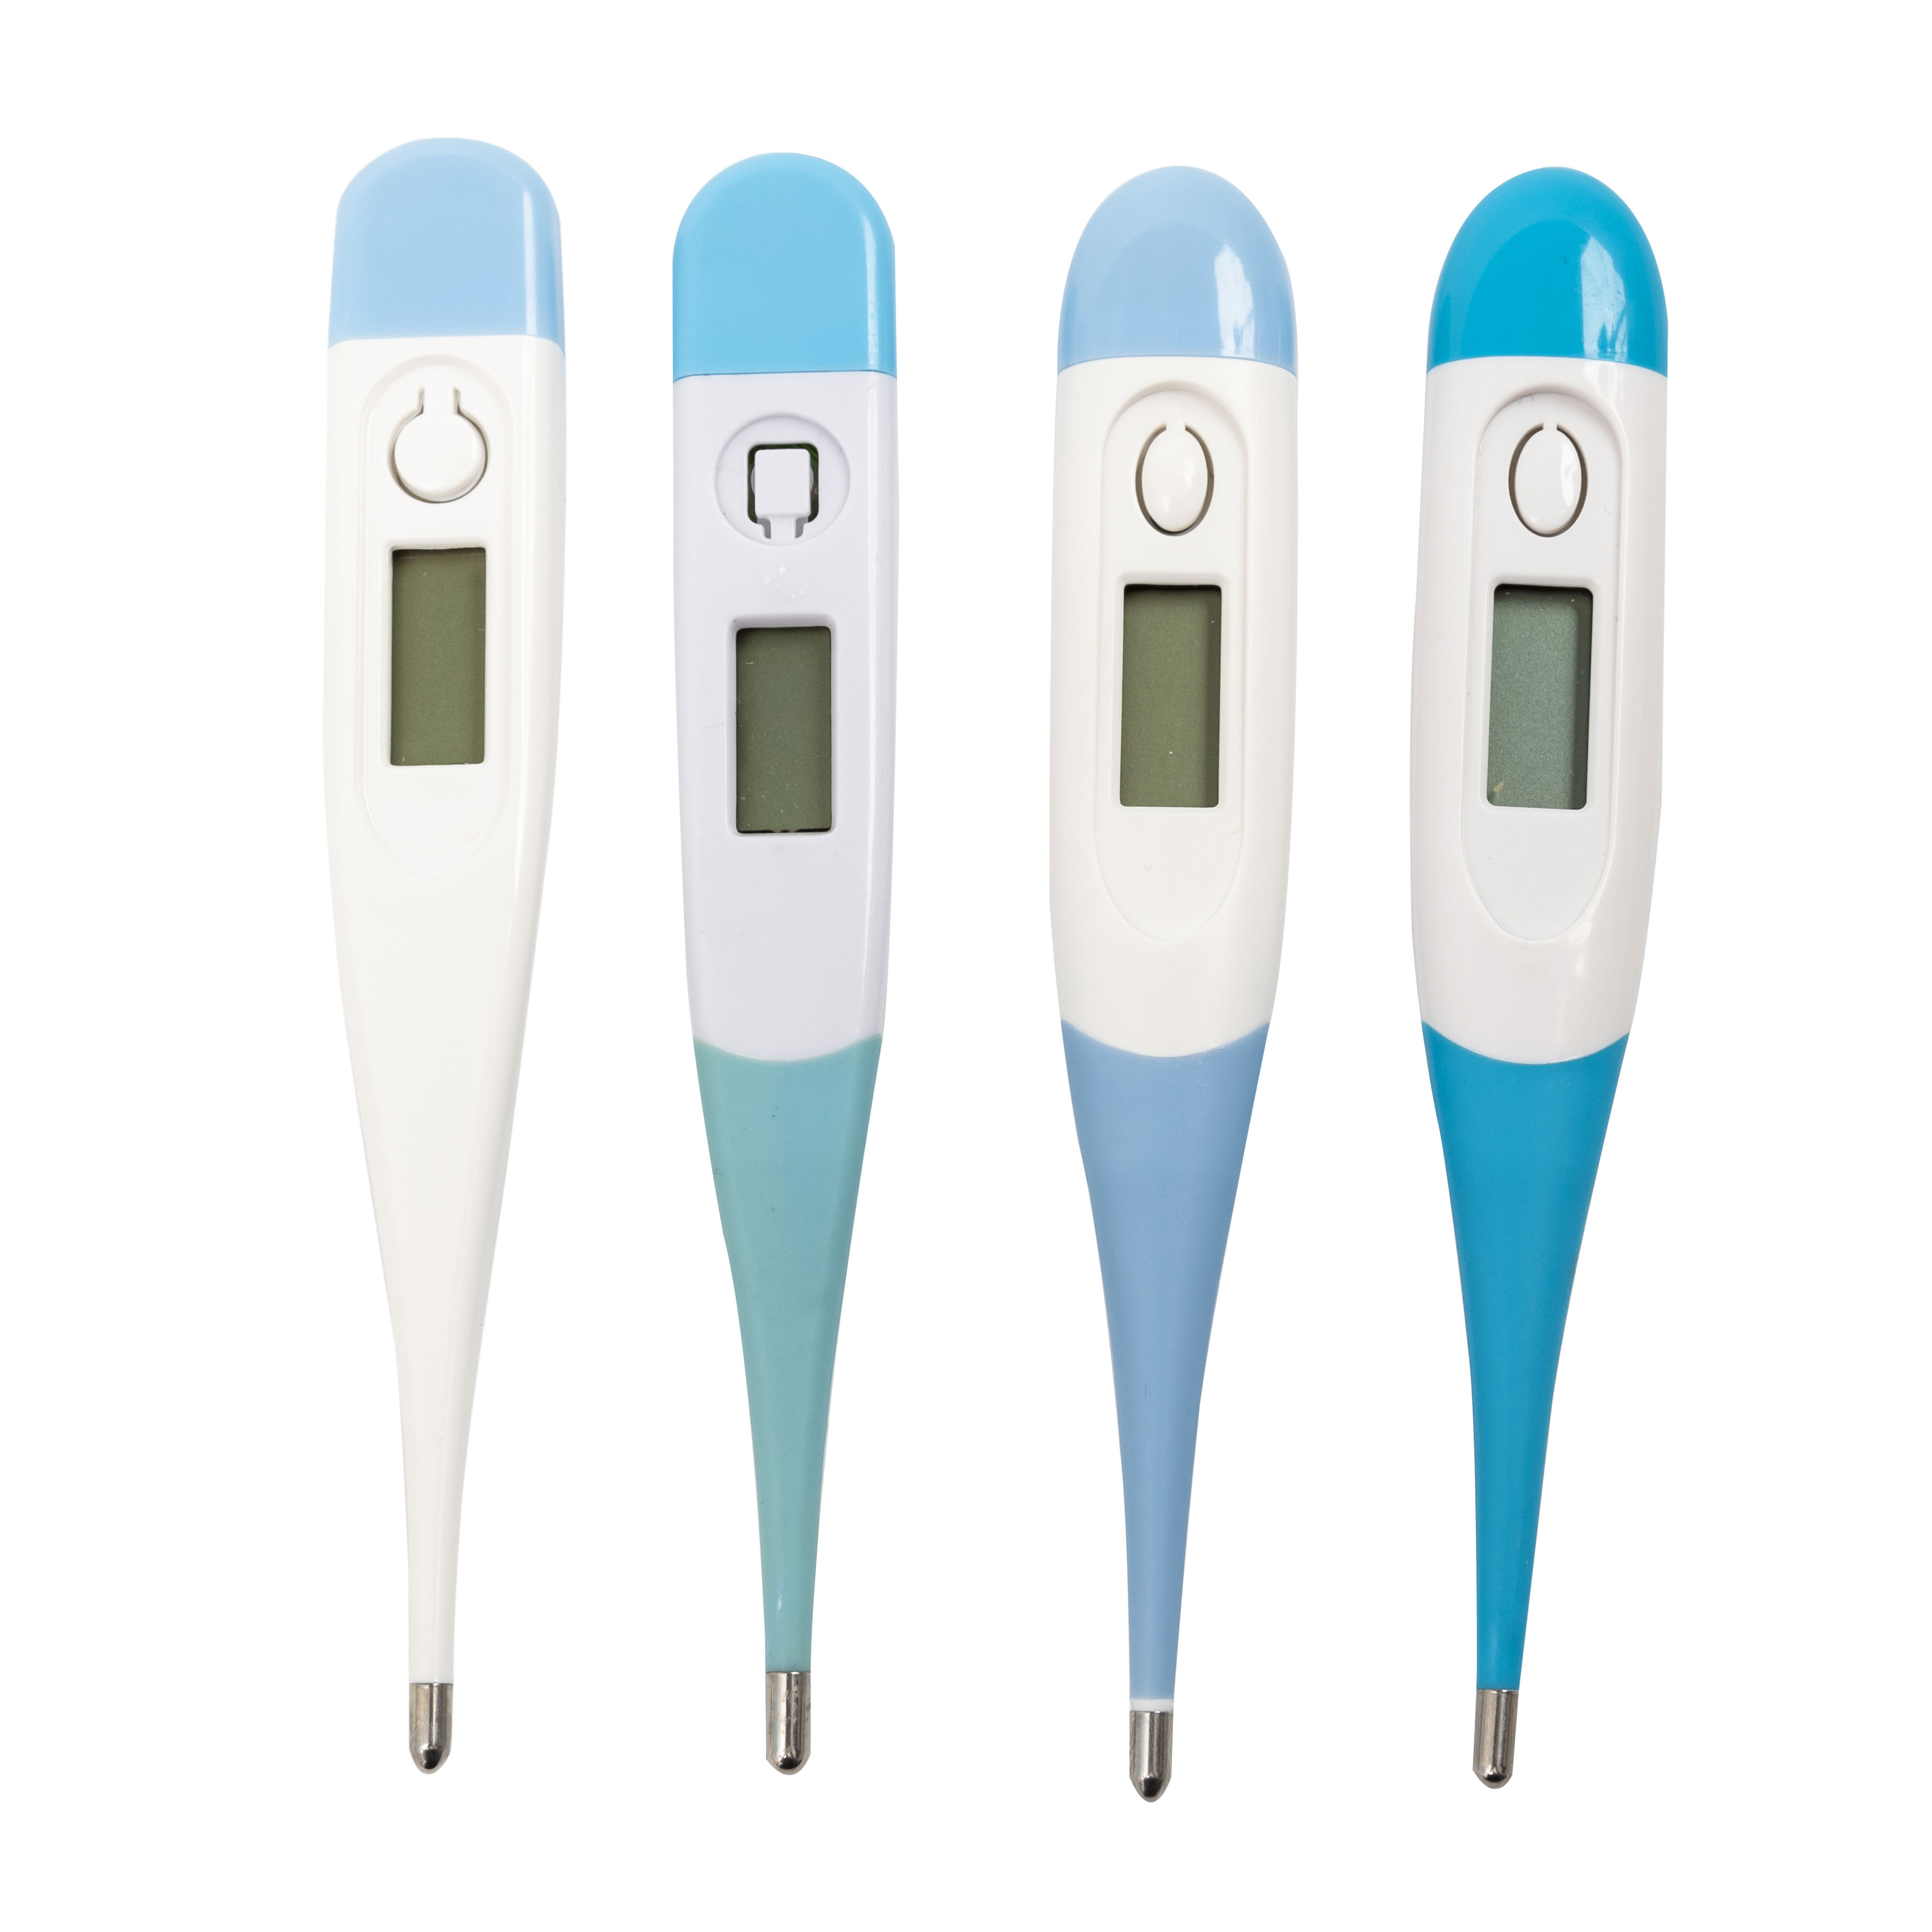  Termómetro clínico resistente al agua para fiebre Termómetro oral digital con sonda rectal corporal OEM